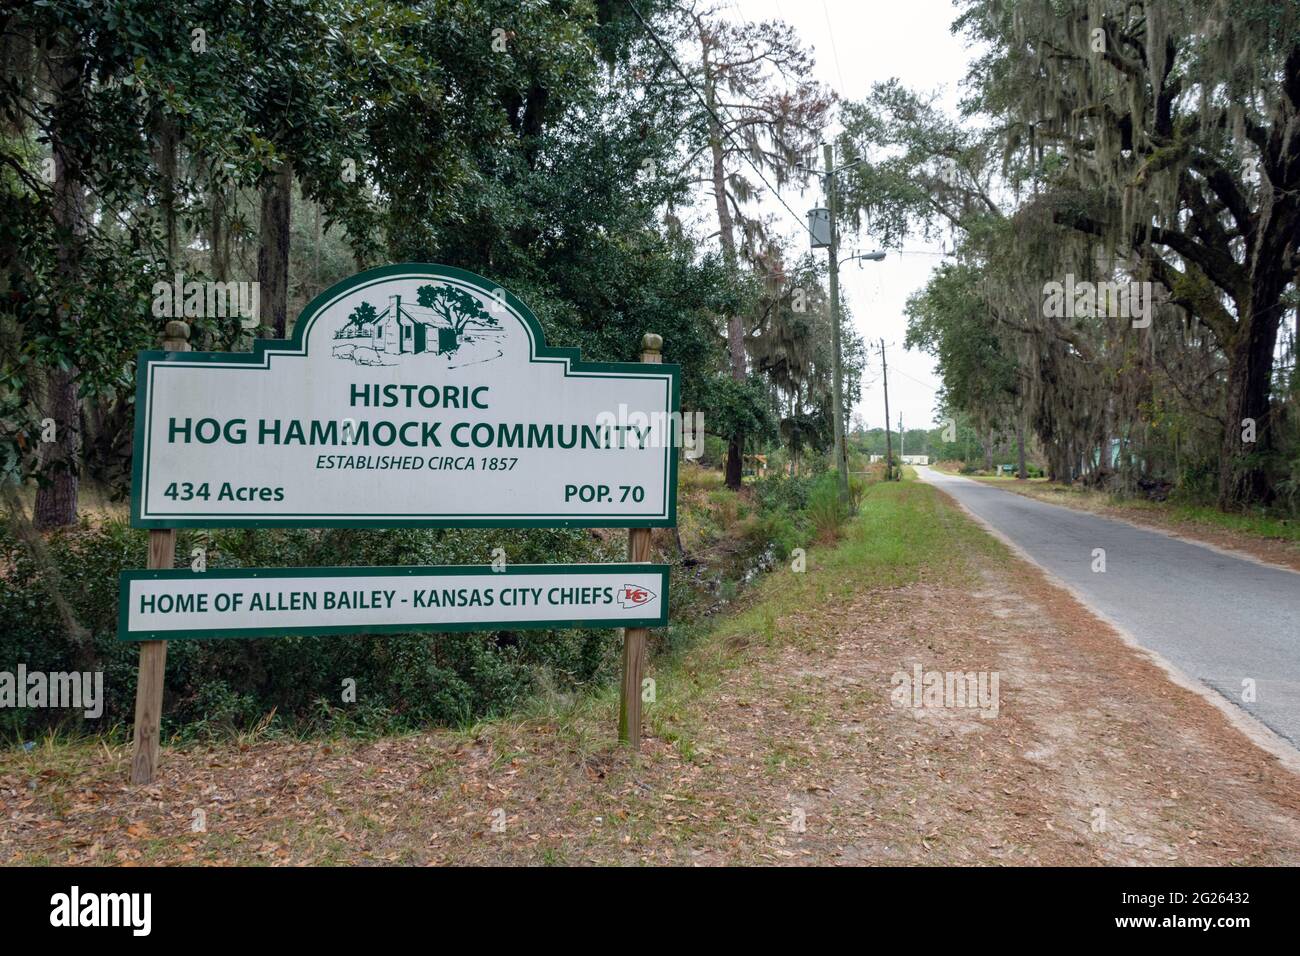 La comunità di Hog Hammock è la casa ancestrale del popolo Gullah Geechee, discendenti afroamericani di schiavi. Foto Stock